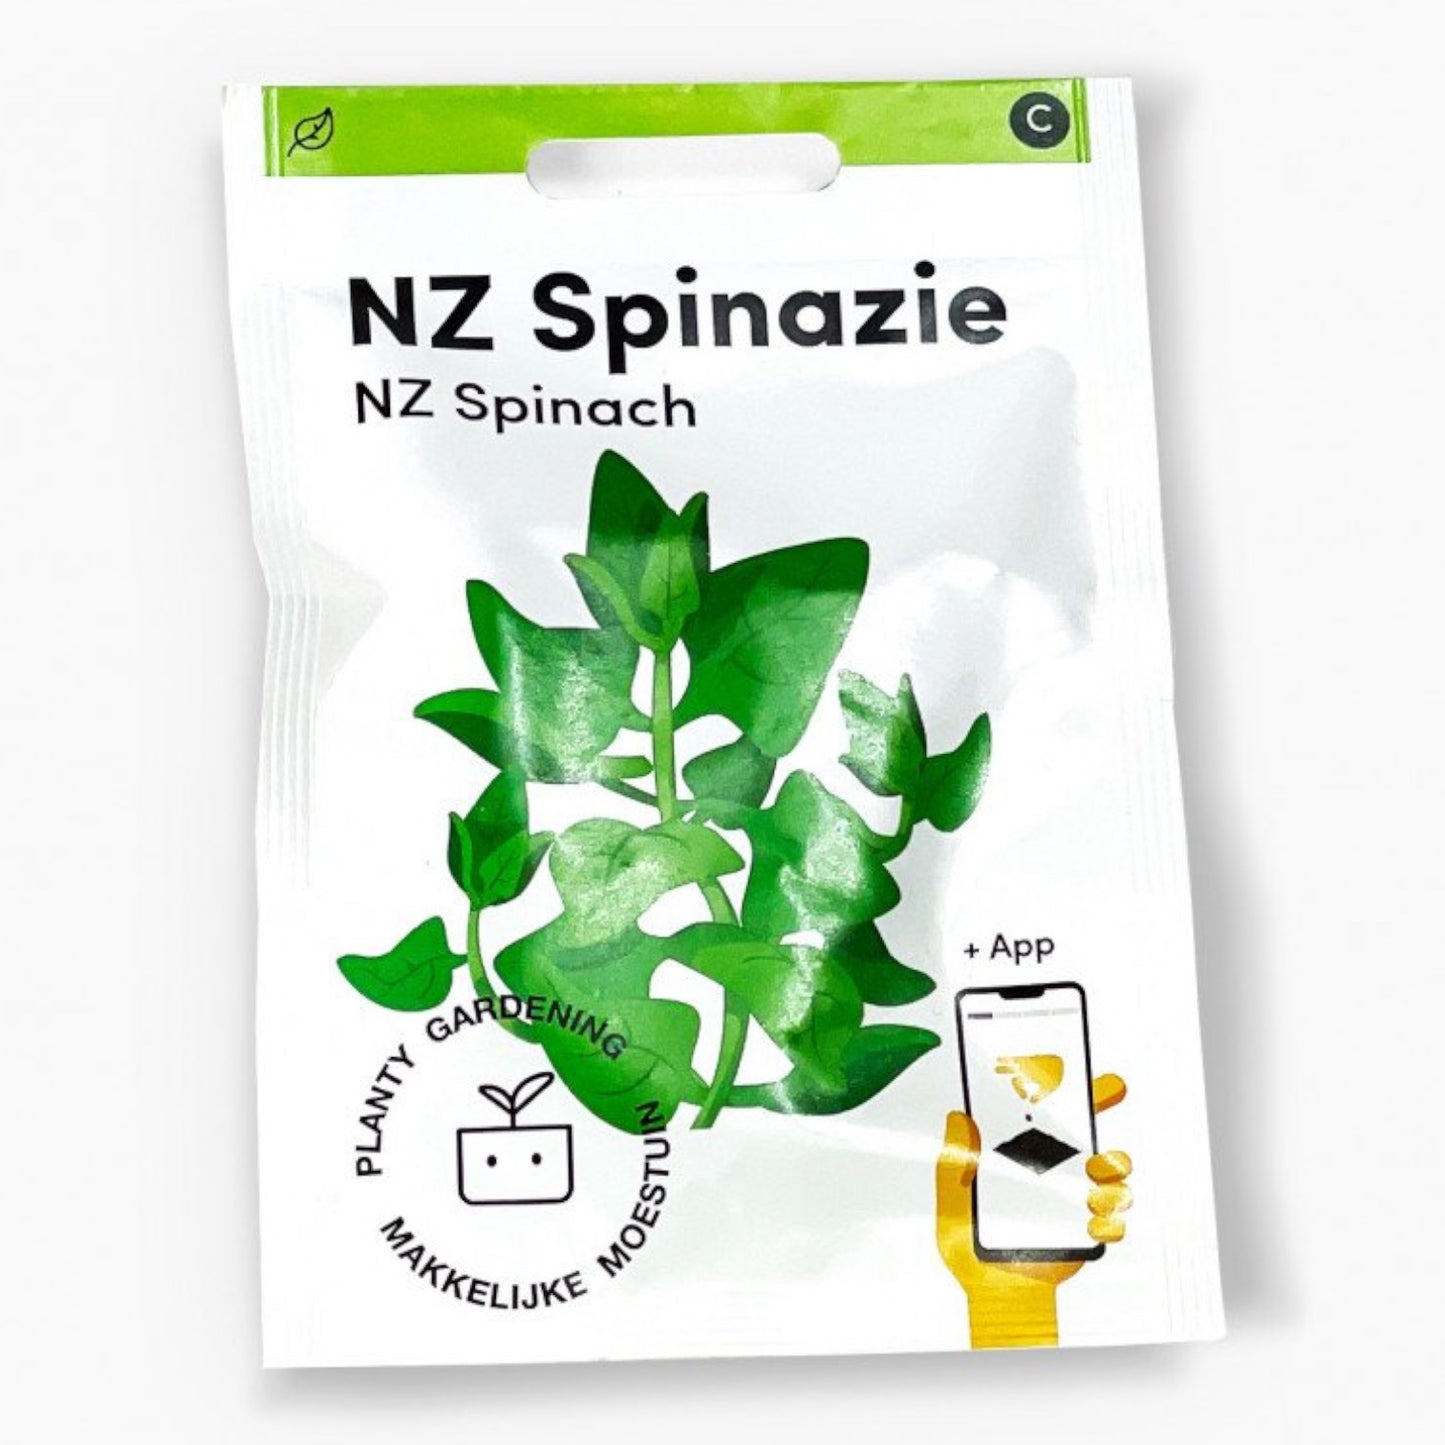 NZ Spinazie